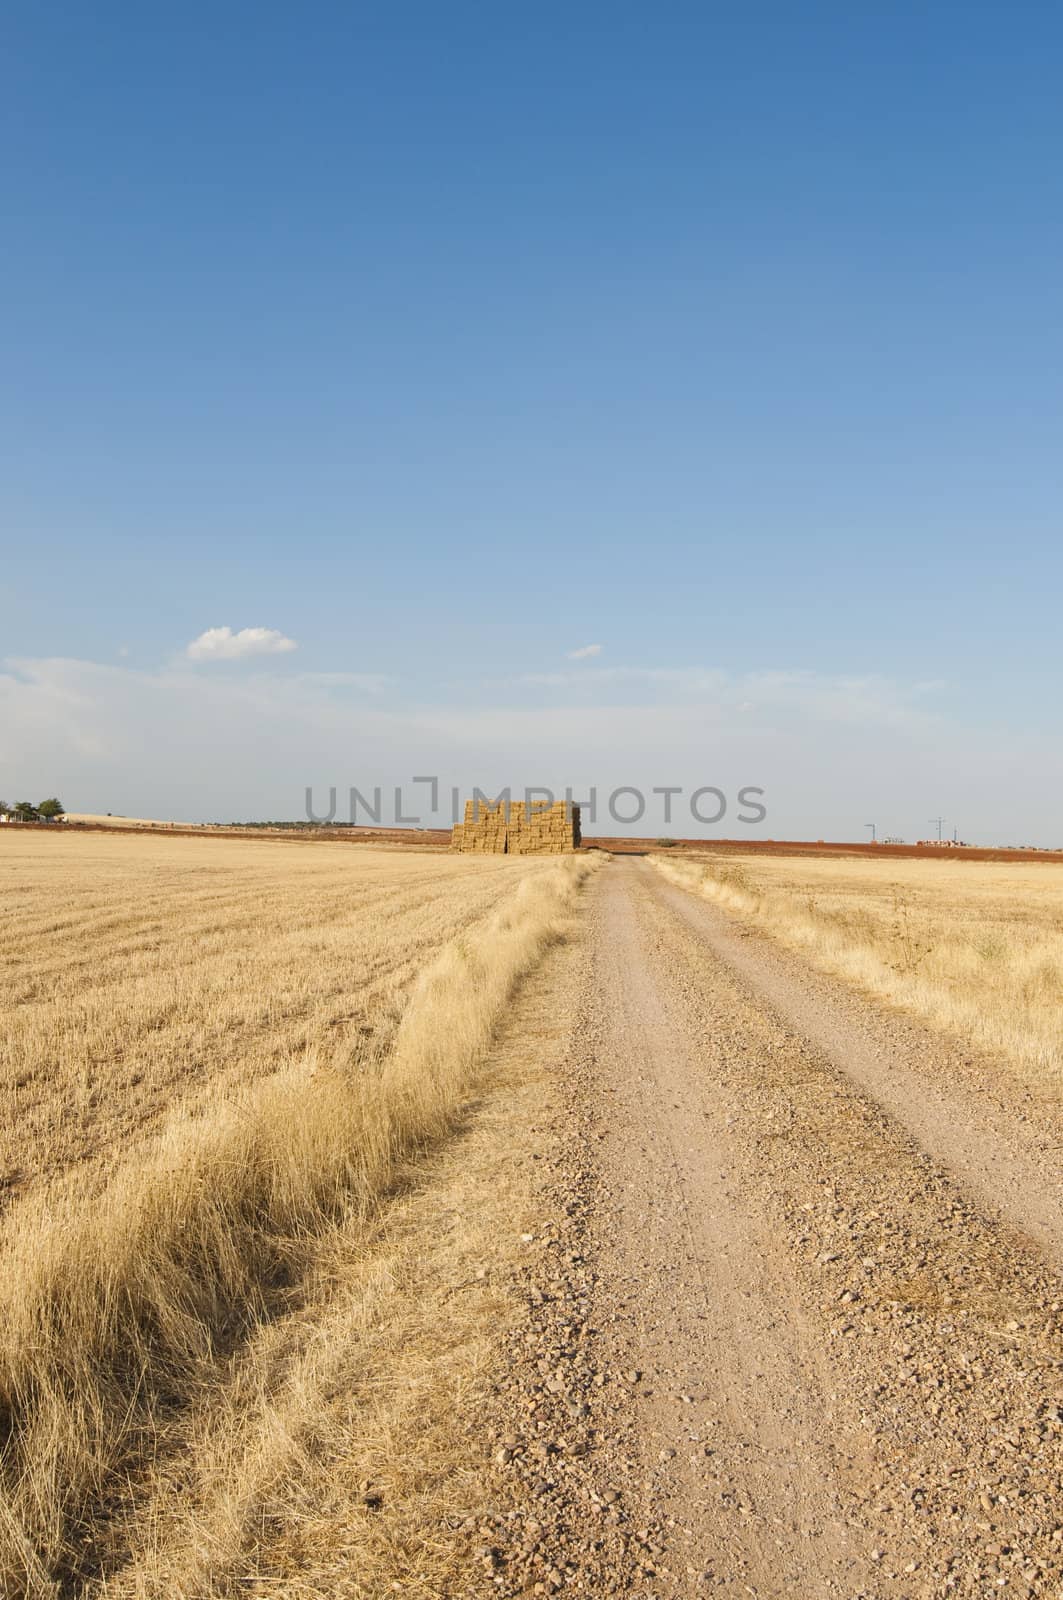 straws of hay, grain crop field by FernandoCortes